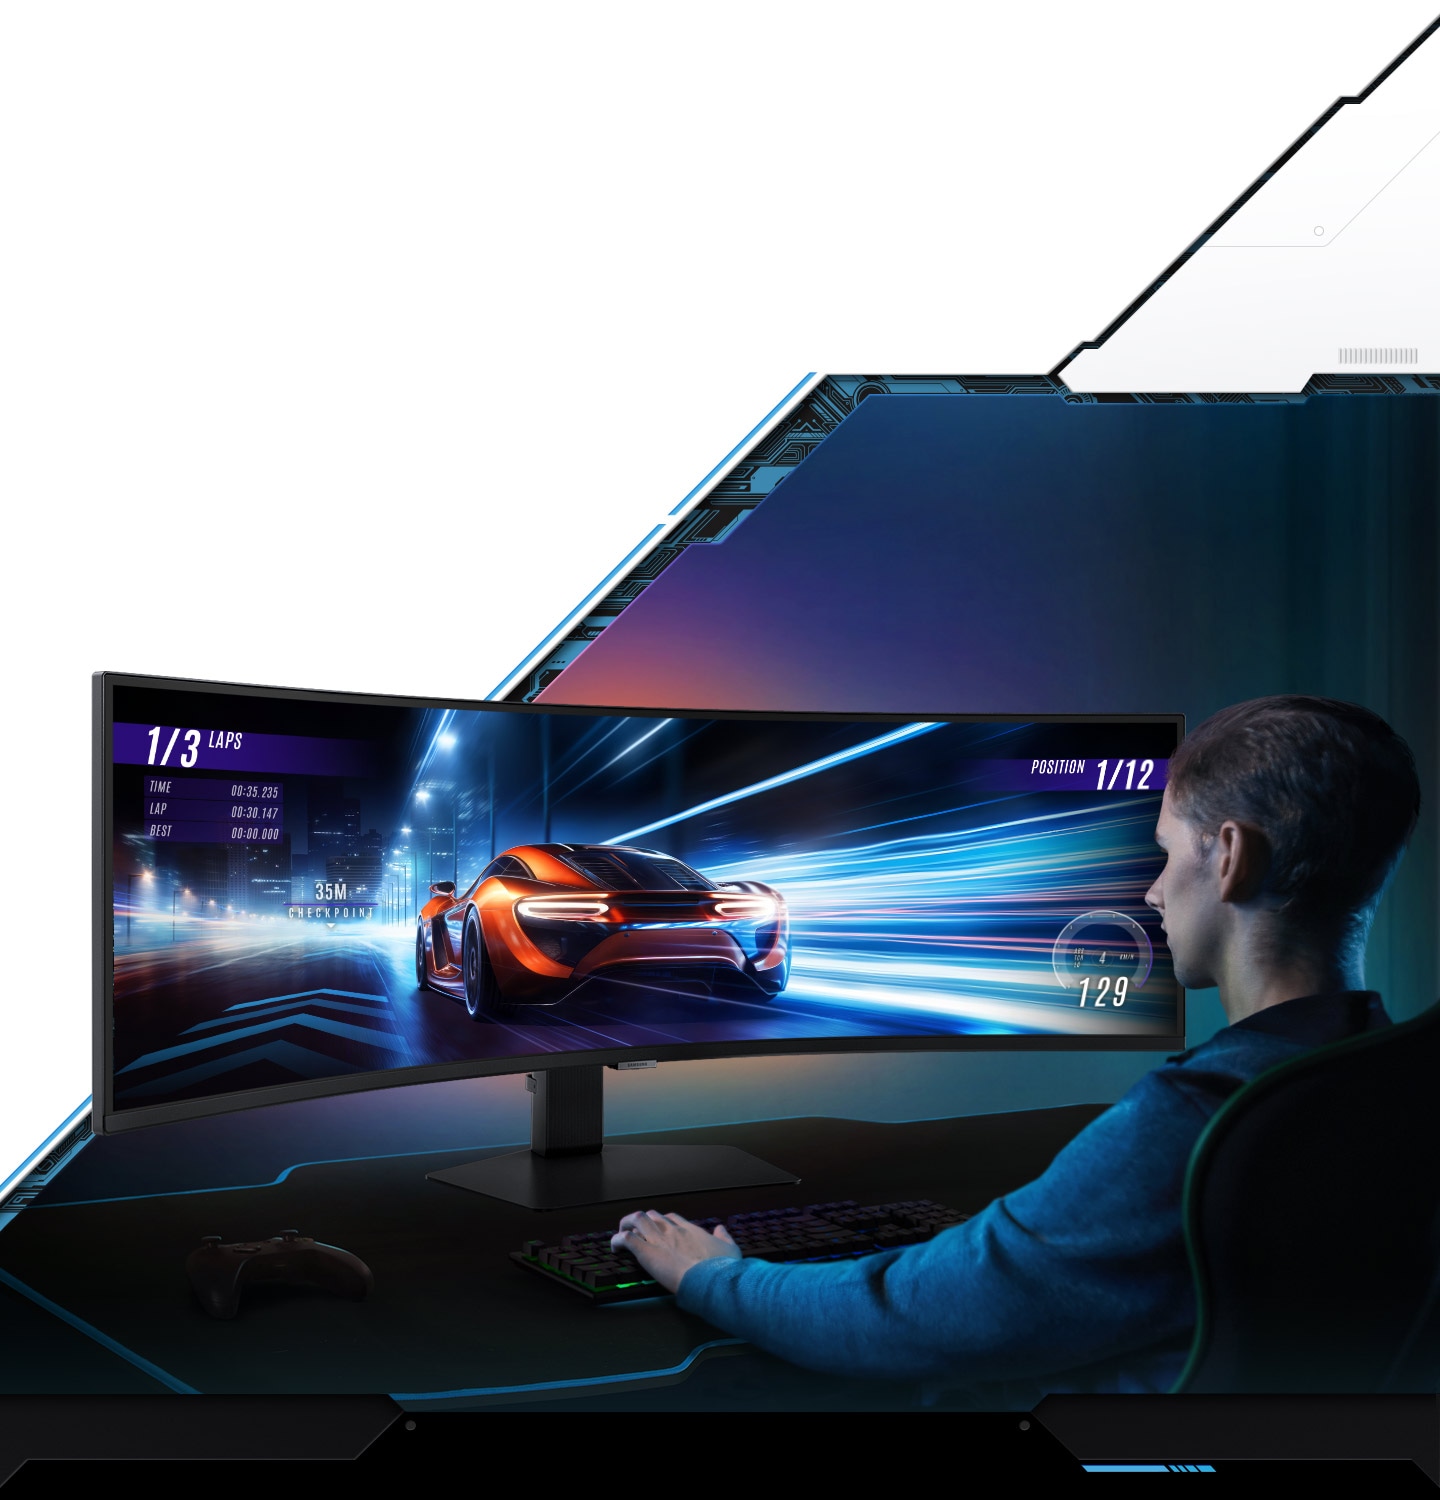 Một màn hình Odyssey đặt trên một bề mặt và một người nam ngồi trước màn hình đang sử dụng bàn phím. Trên màn hình là trò chơi đua ô tô có cảnh một chiếc ô tô thể thao màu đỏ đang lao về phía trước.